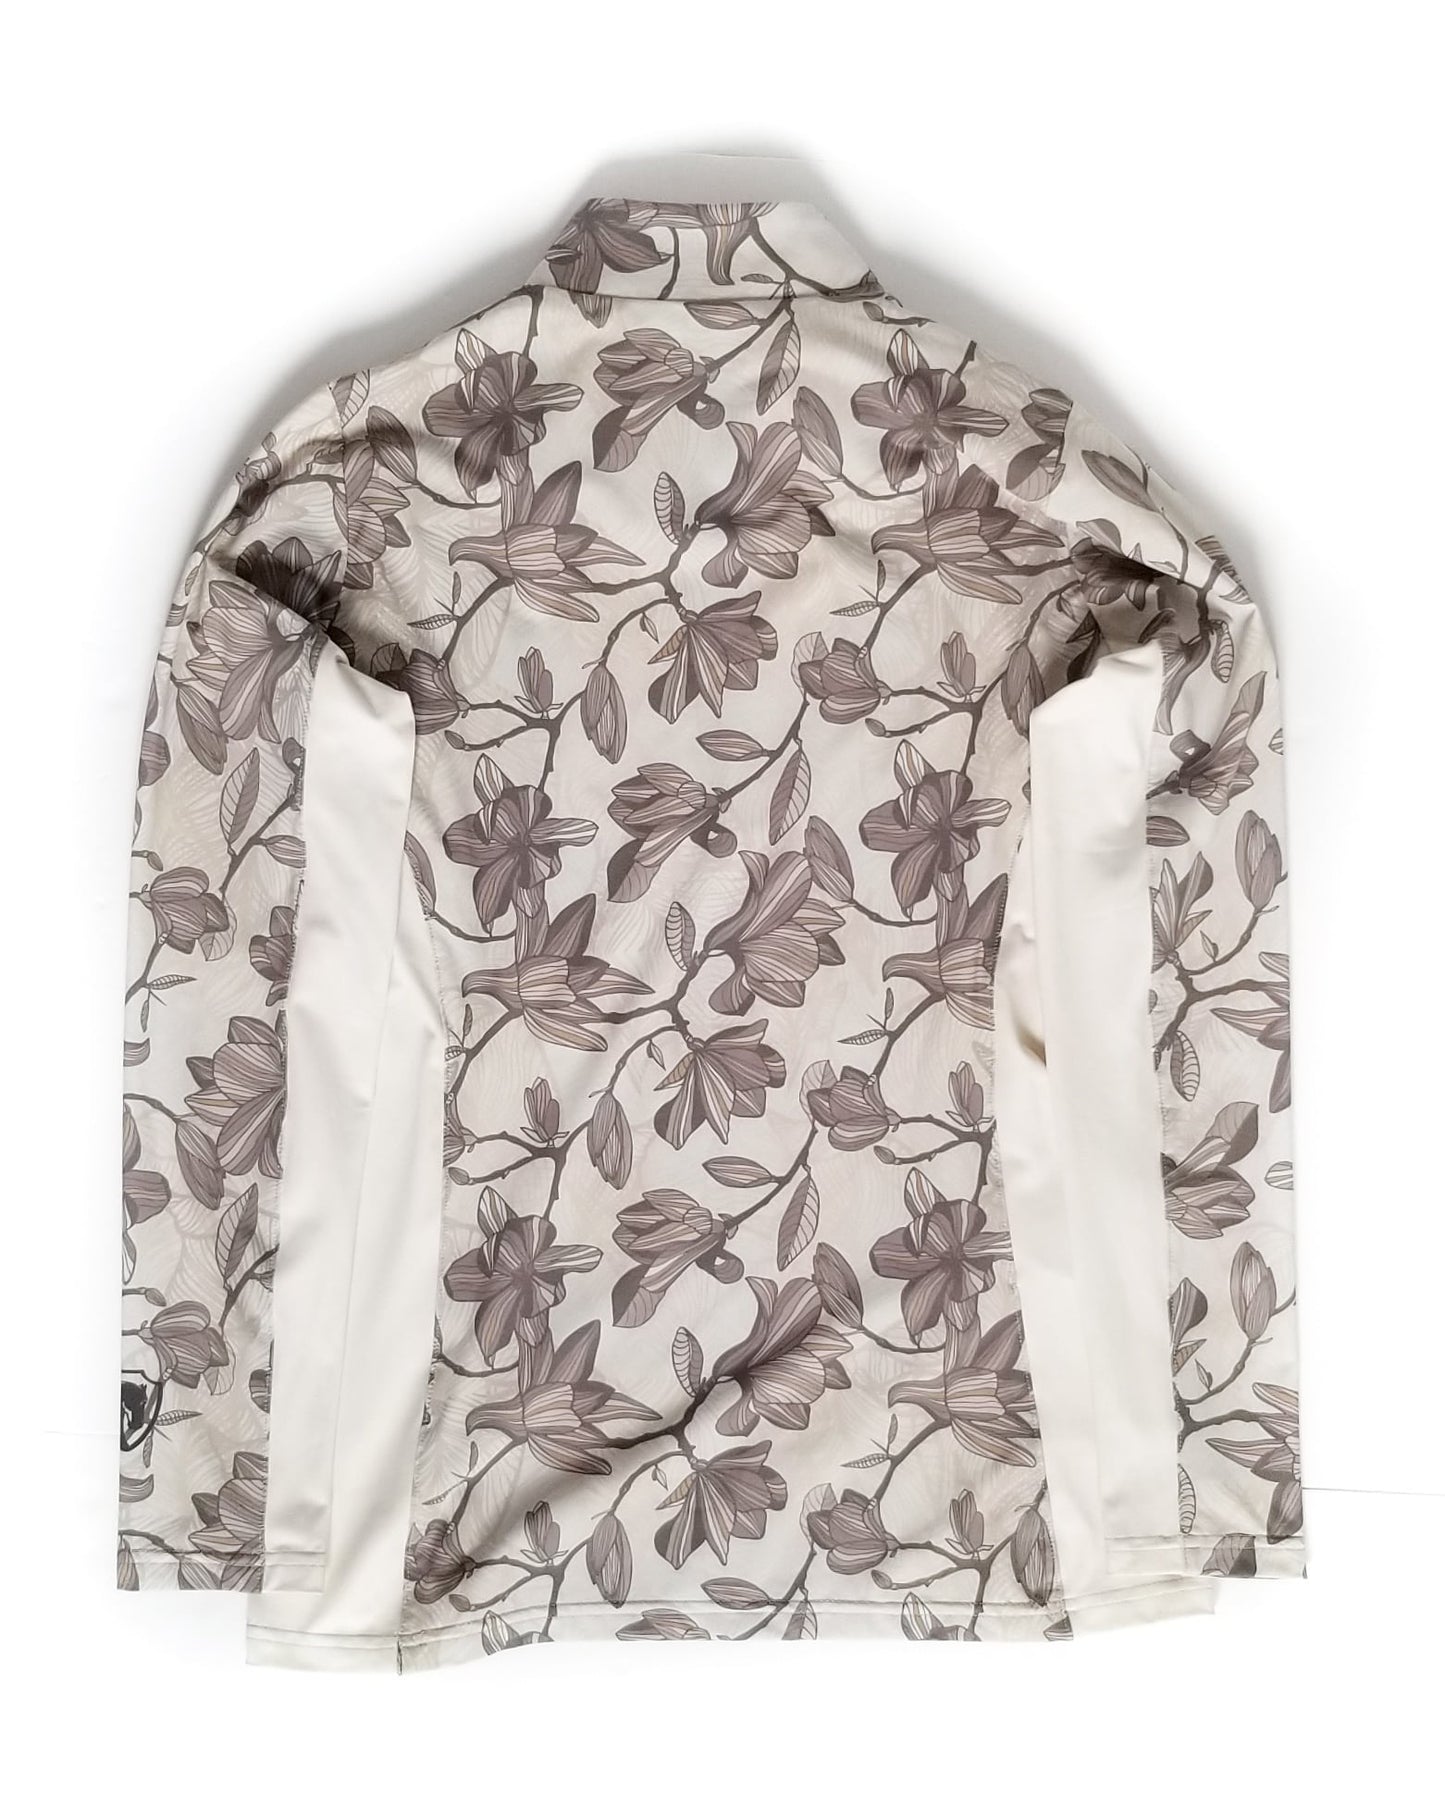 Arista Long Sleeve Quarter Zip Sun Shirt - Magnolia Natural - Small